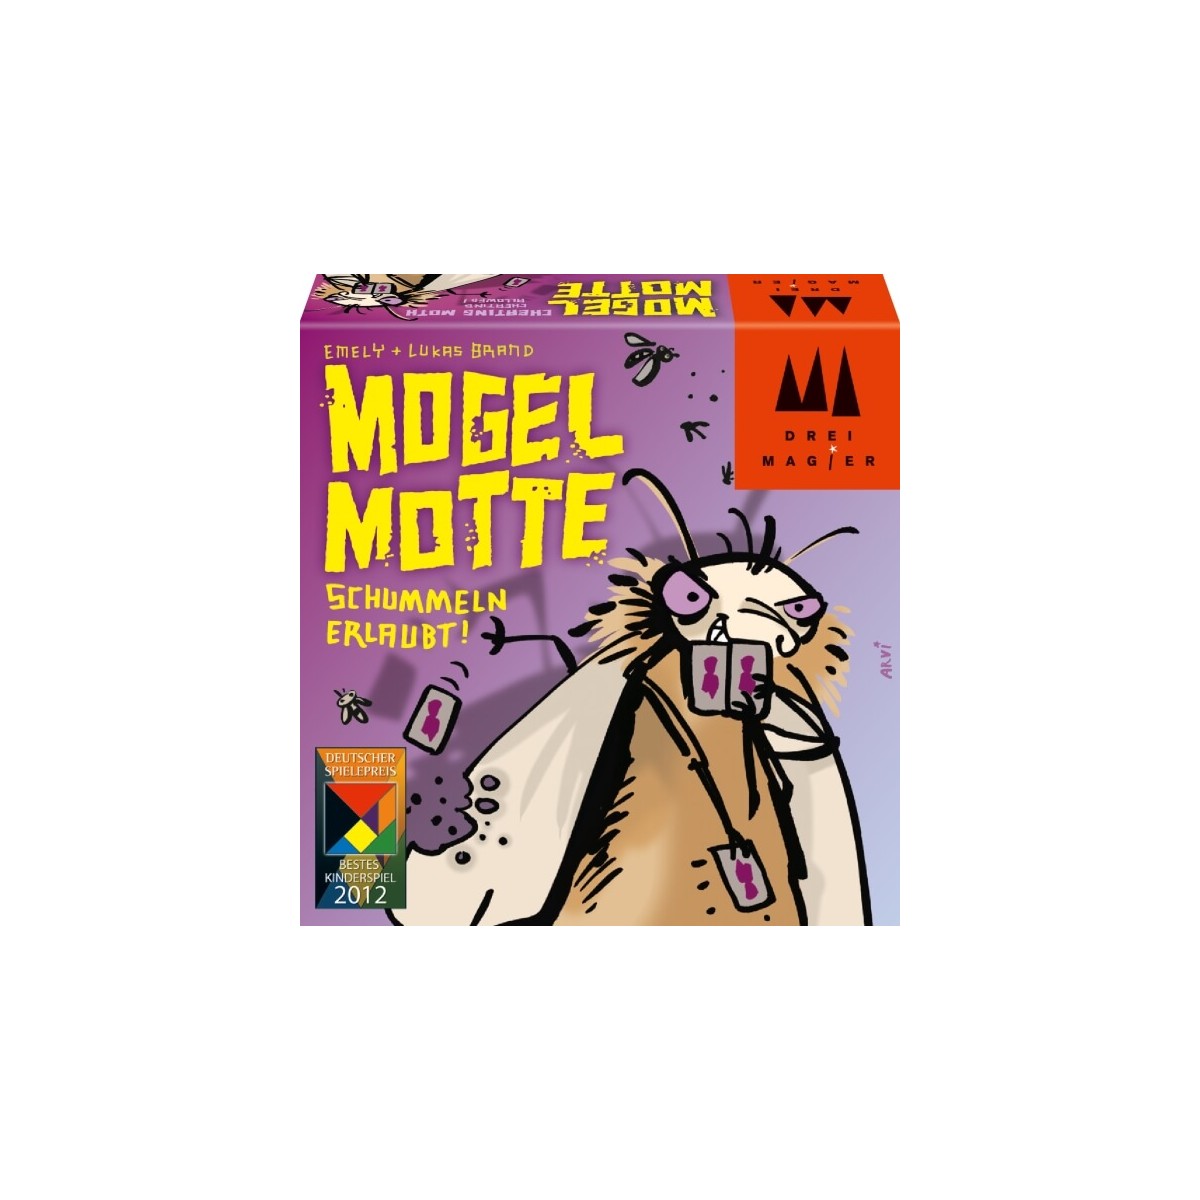 Drei Magier Spiele - Mogel Motte